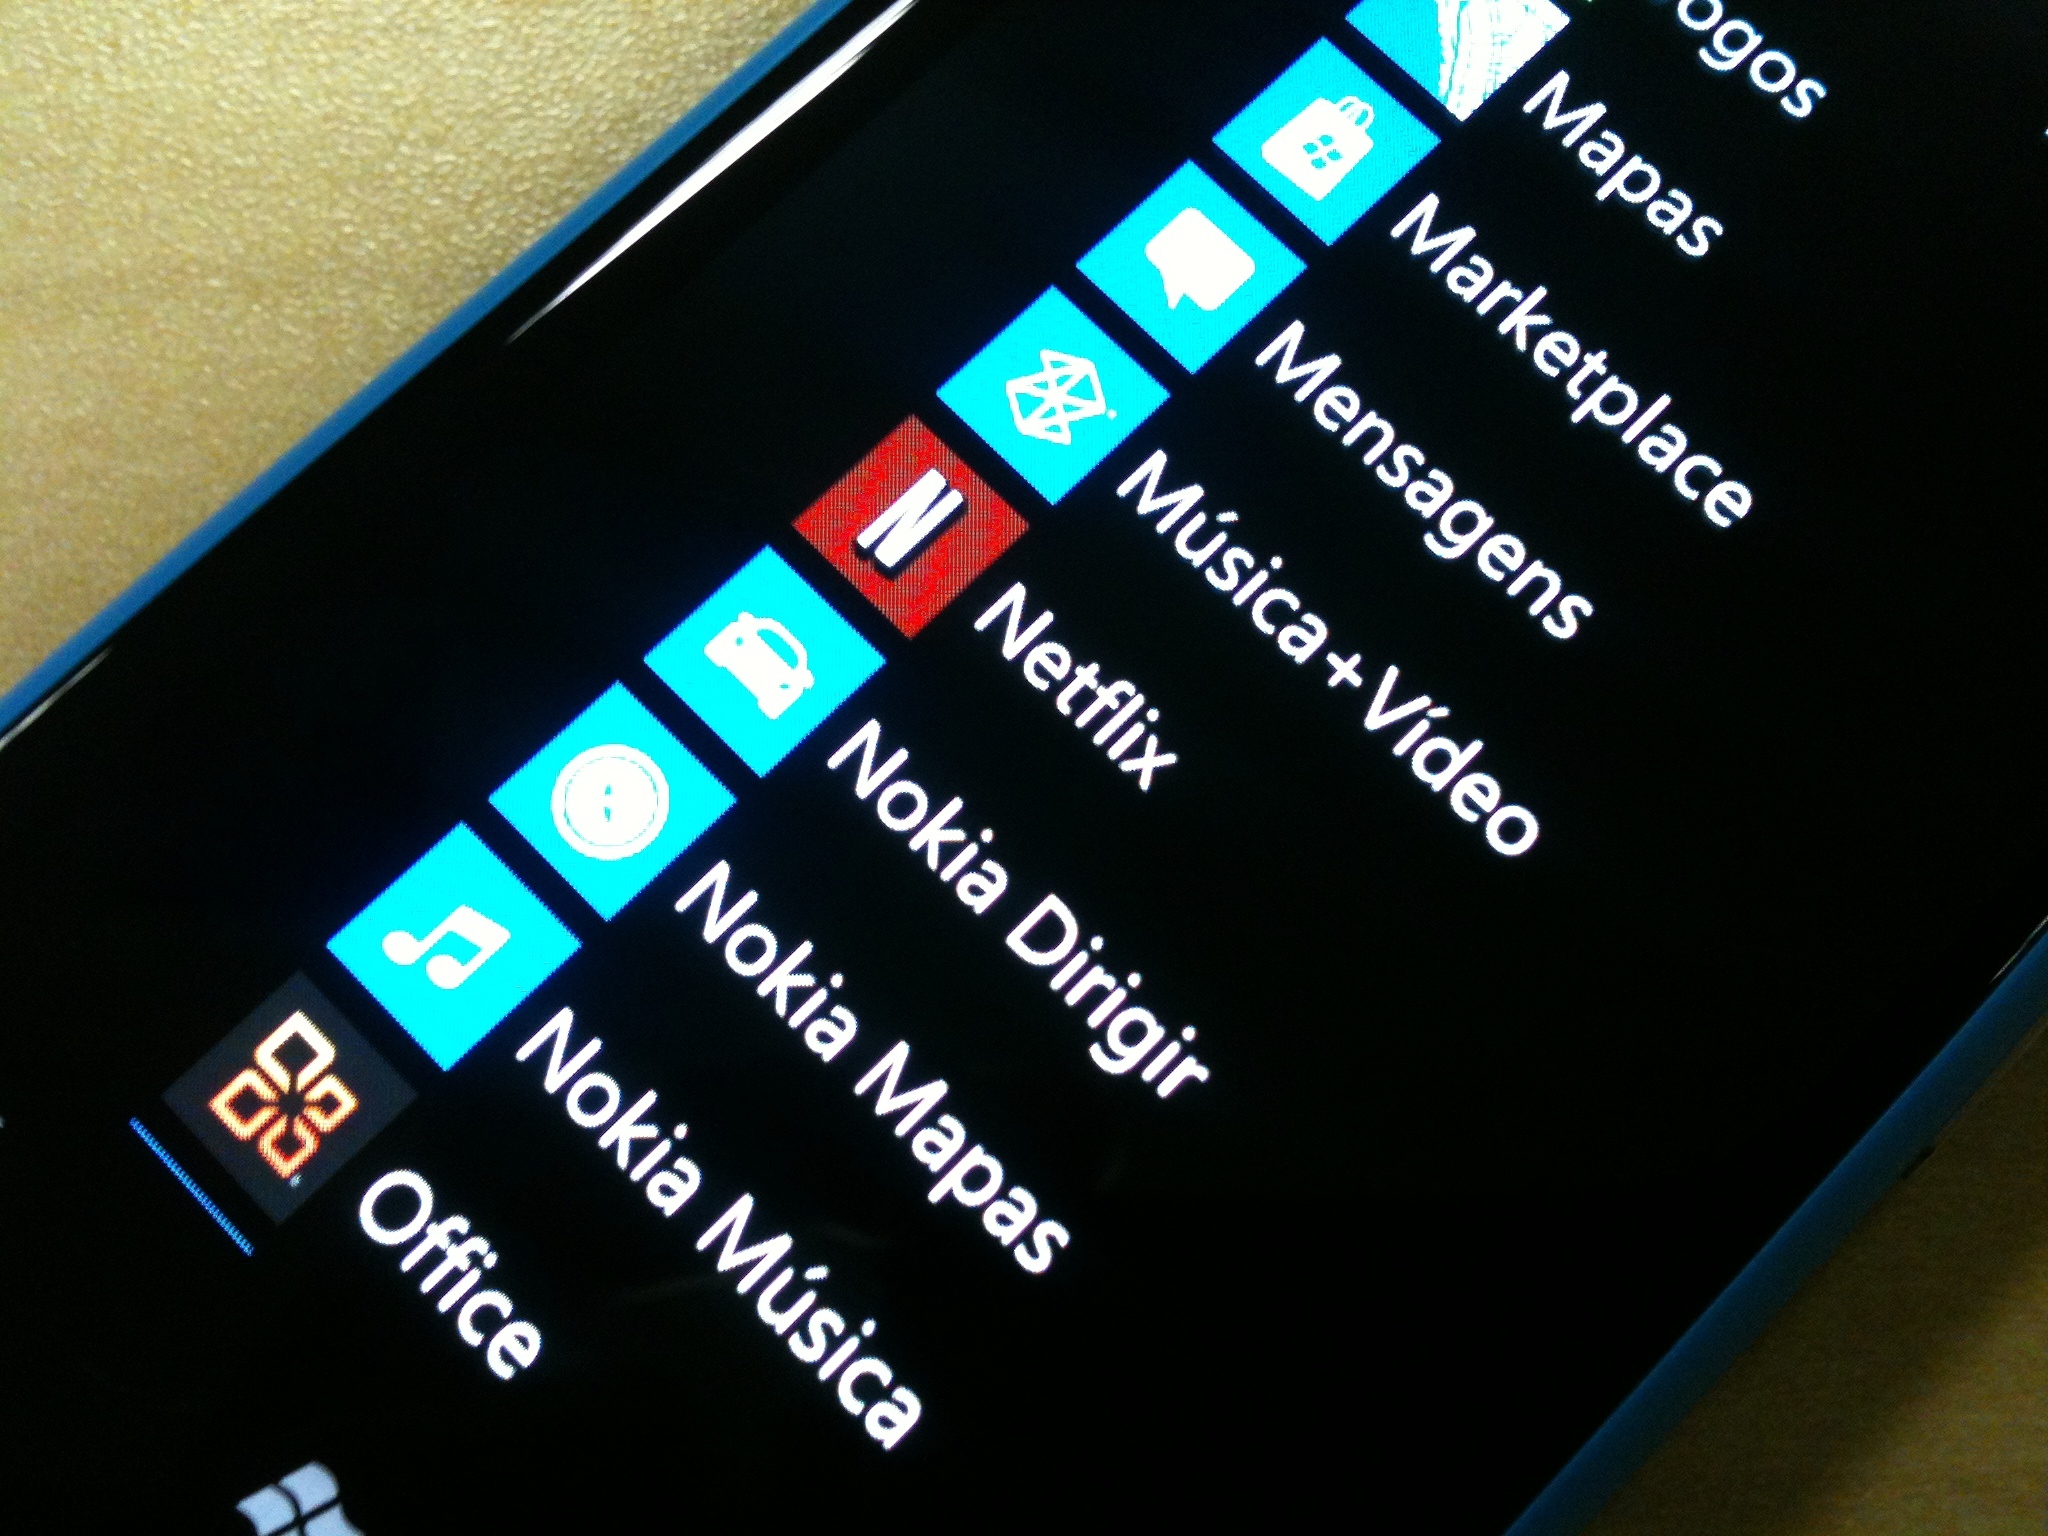 update netflix app for windows 10